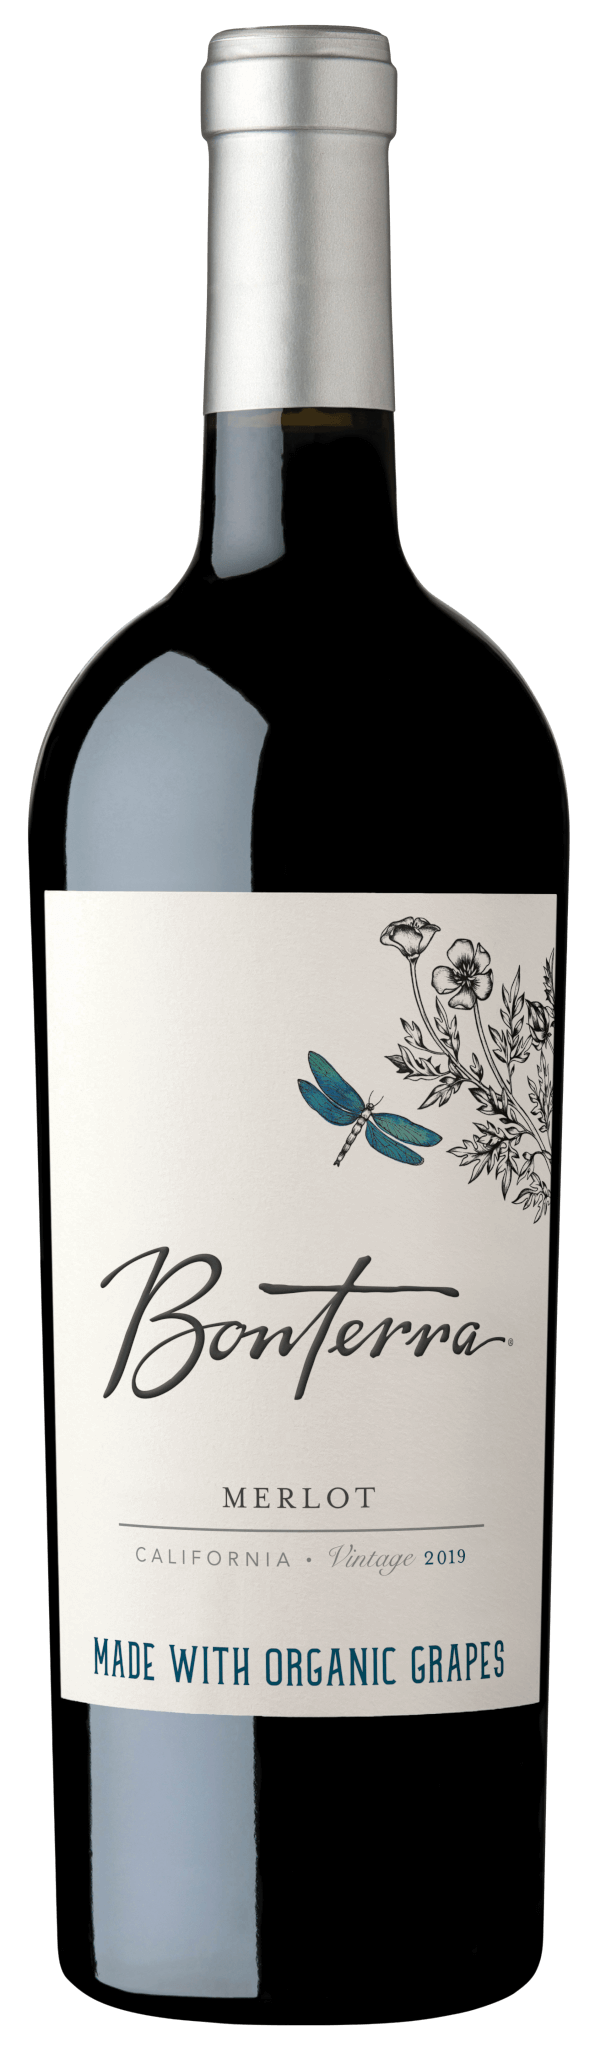 Bonterra Merlot 2019 Bottle